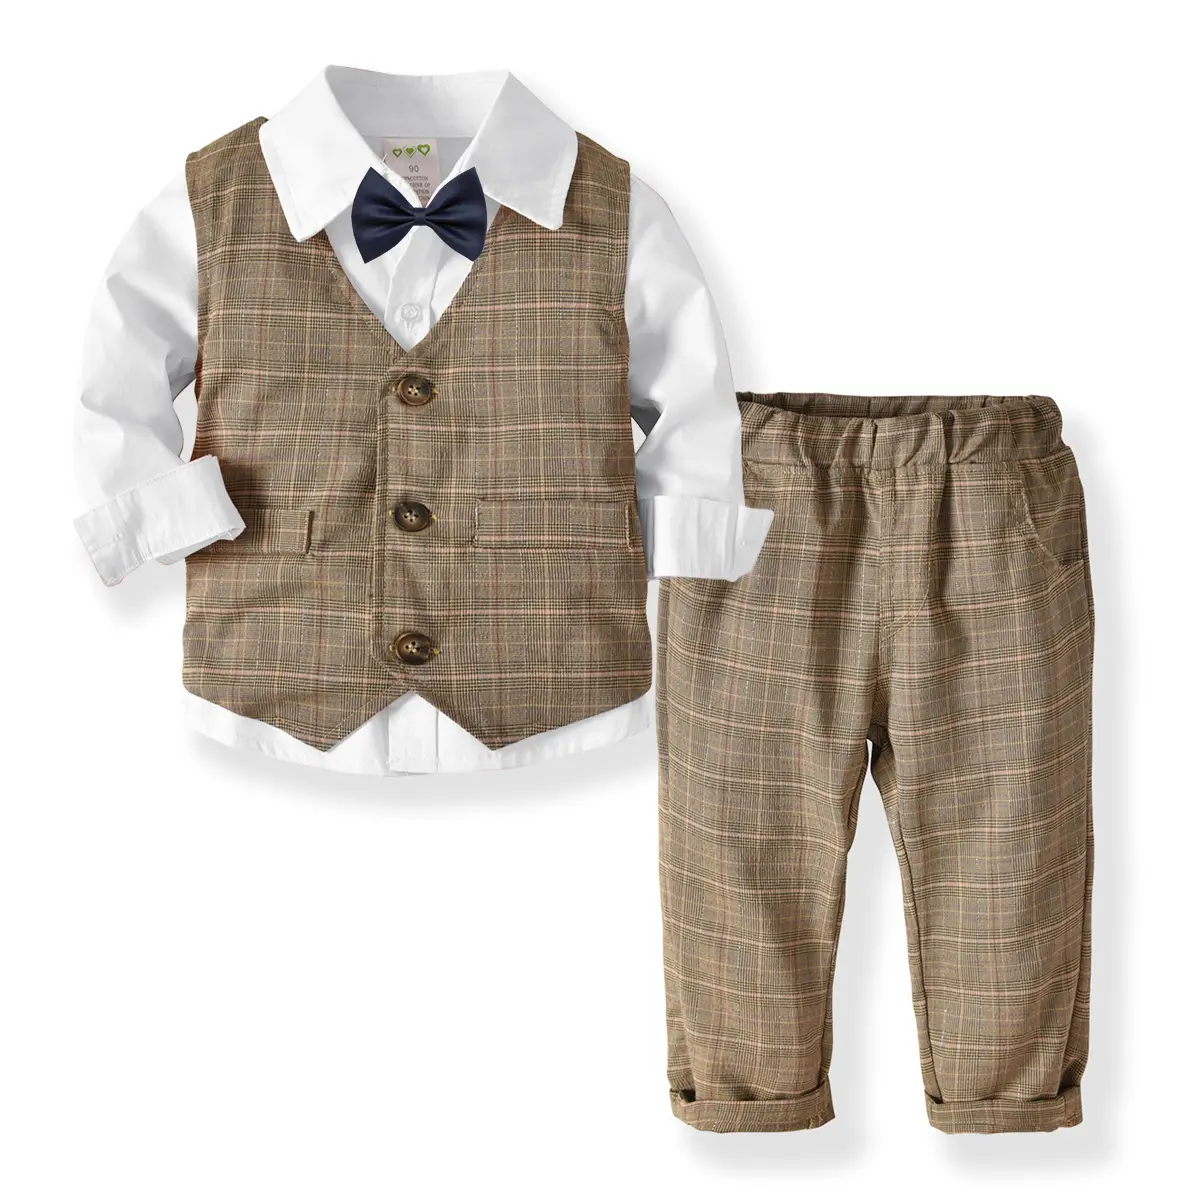 2020新しいデザイン秋の男の子服スーツシャツベストパンツネクタイ4PCS紳士服男の子服セット19A310